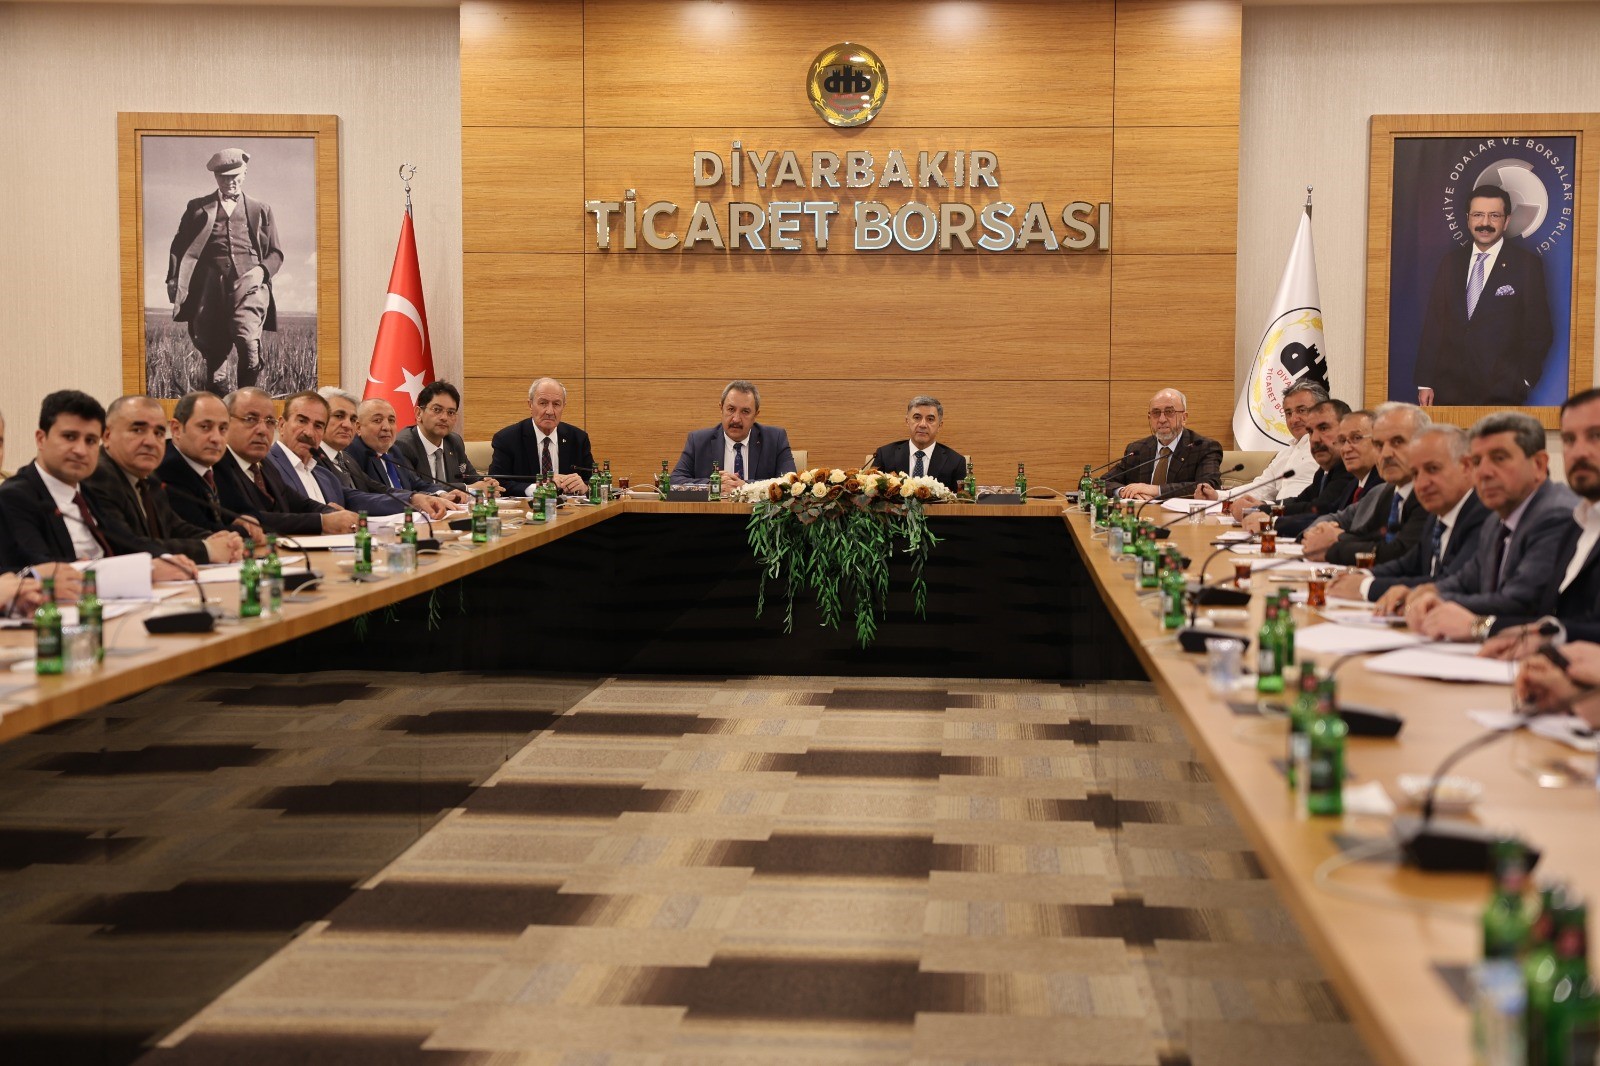 Diyarbakır Ticaret Borsası’nda ÜPAK Toplantısı gerçekleştirildi